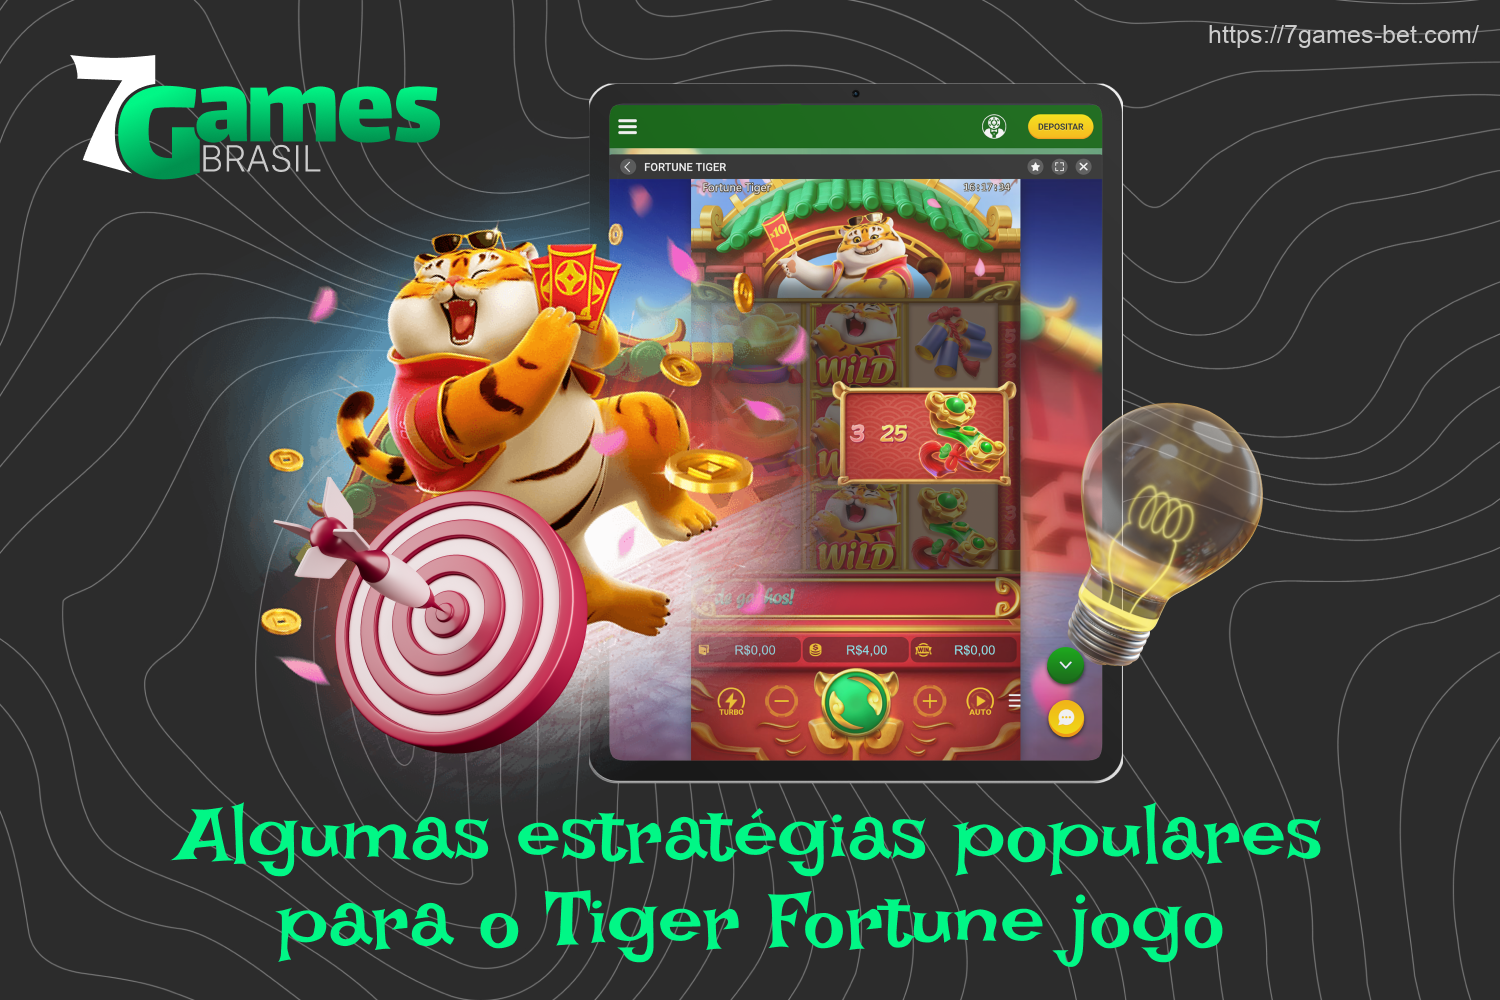 Para obter uma vitória no 7Games Fortune Tiger, você precisa experimentar diferentes estratégias, pois não há um único caminho para a vitória nesse jogo